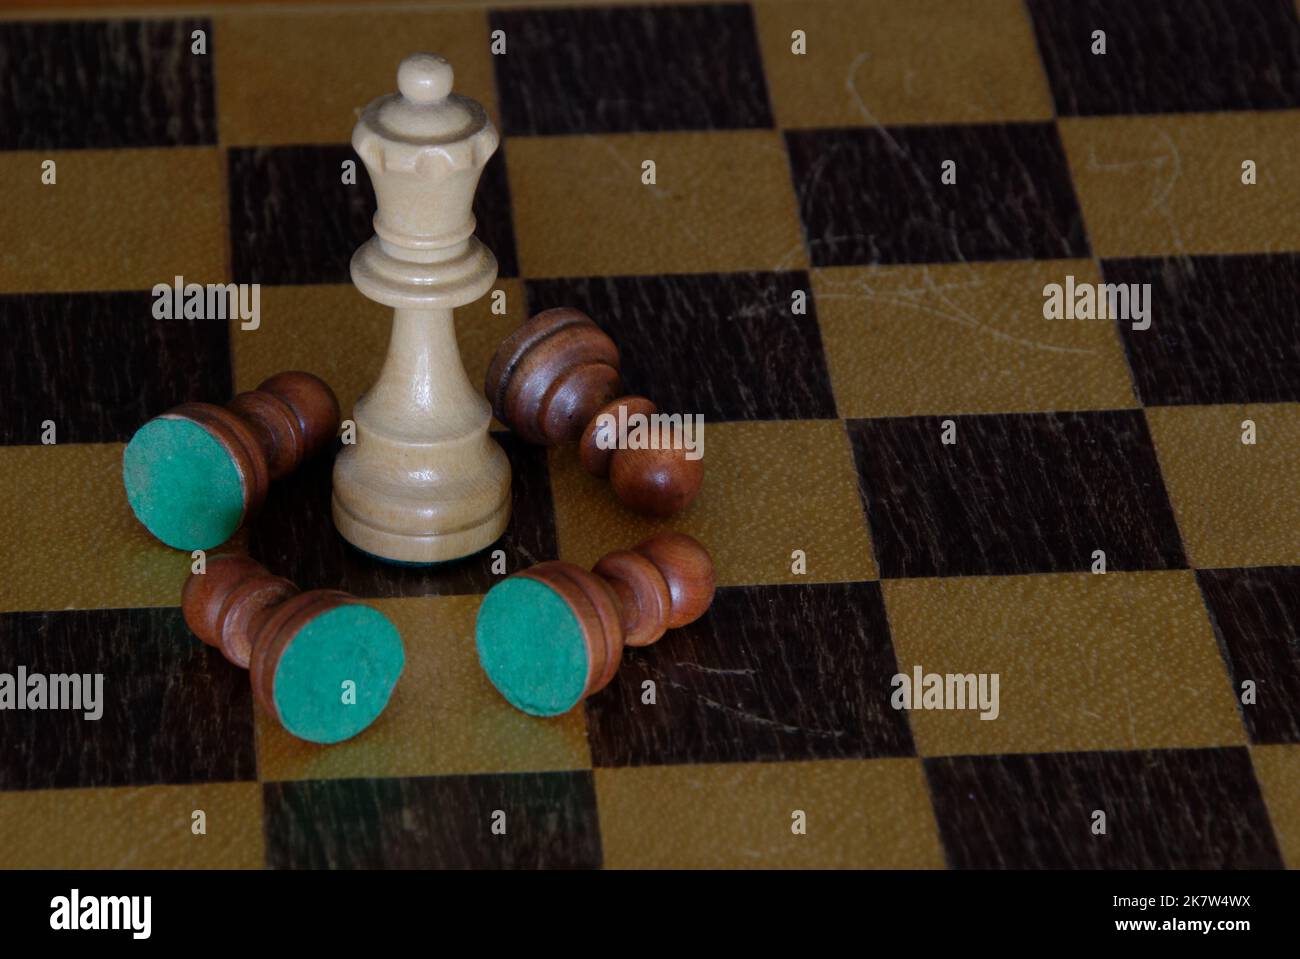 Chess - ein weißer König steht auf dem Schachbrett, umgeben von gefallenen braunen Schachfiguren - es gibt keine anderen Figuren auf dem Brett. Der Kontrast ist stark. Stockfoto